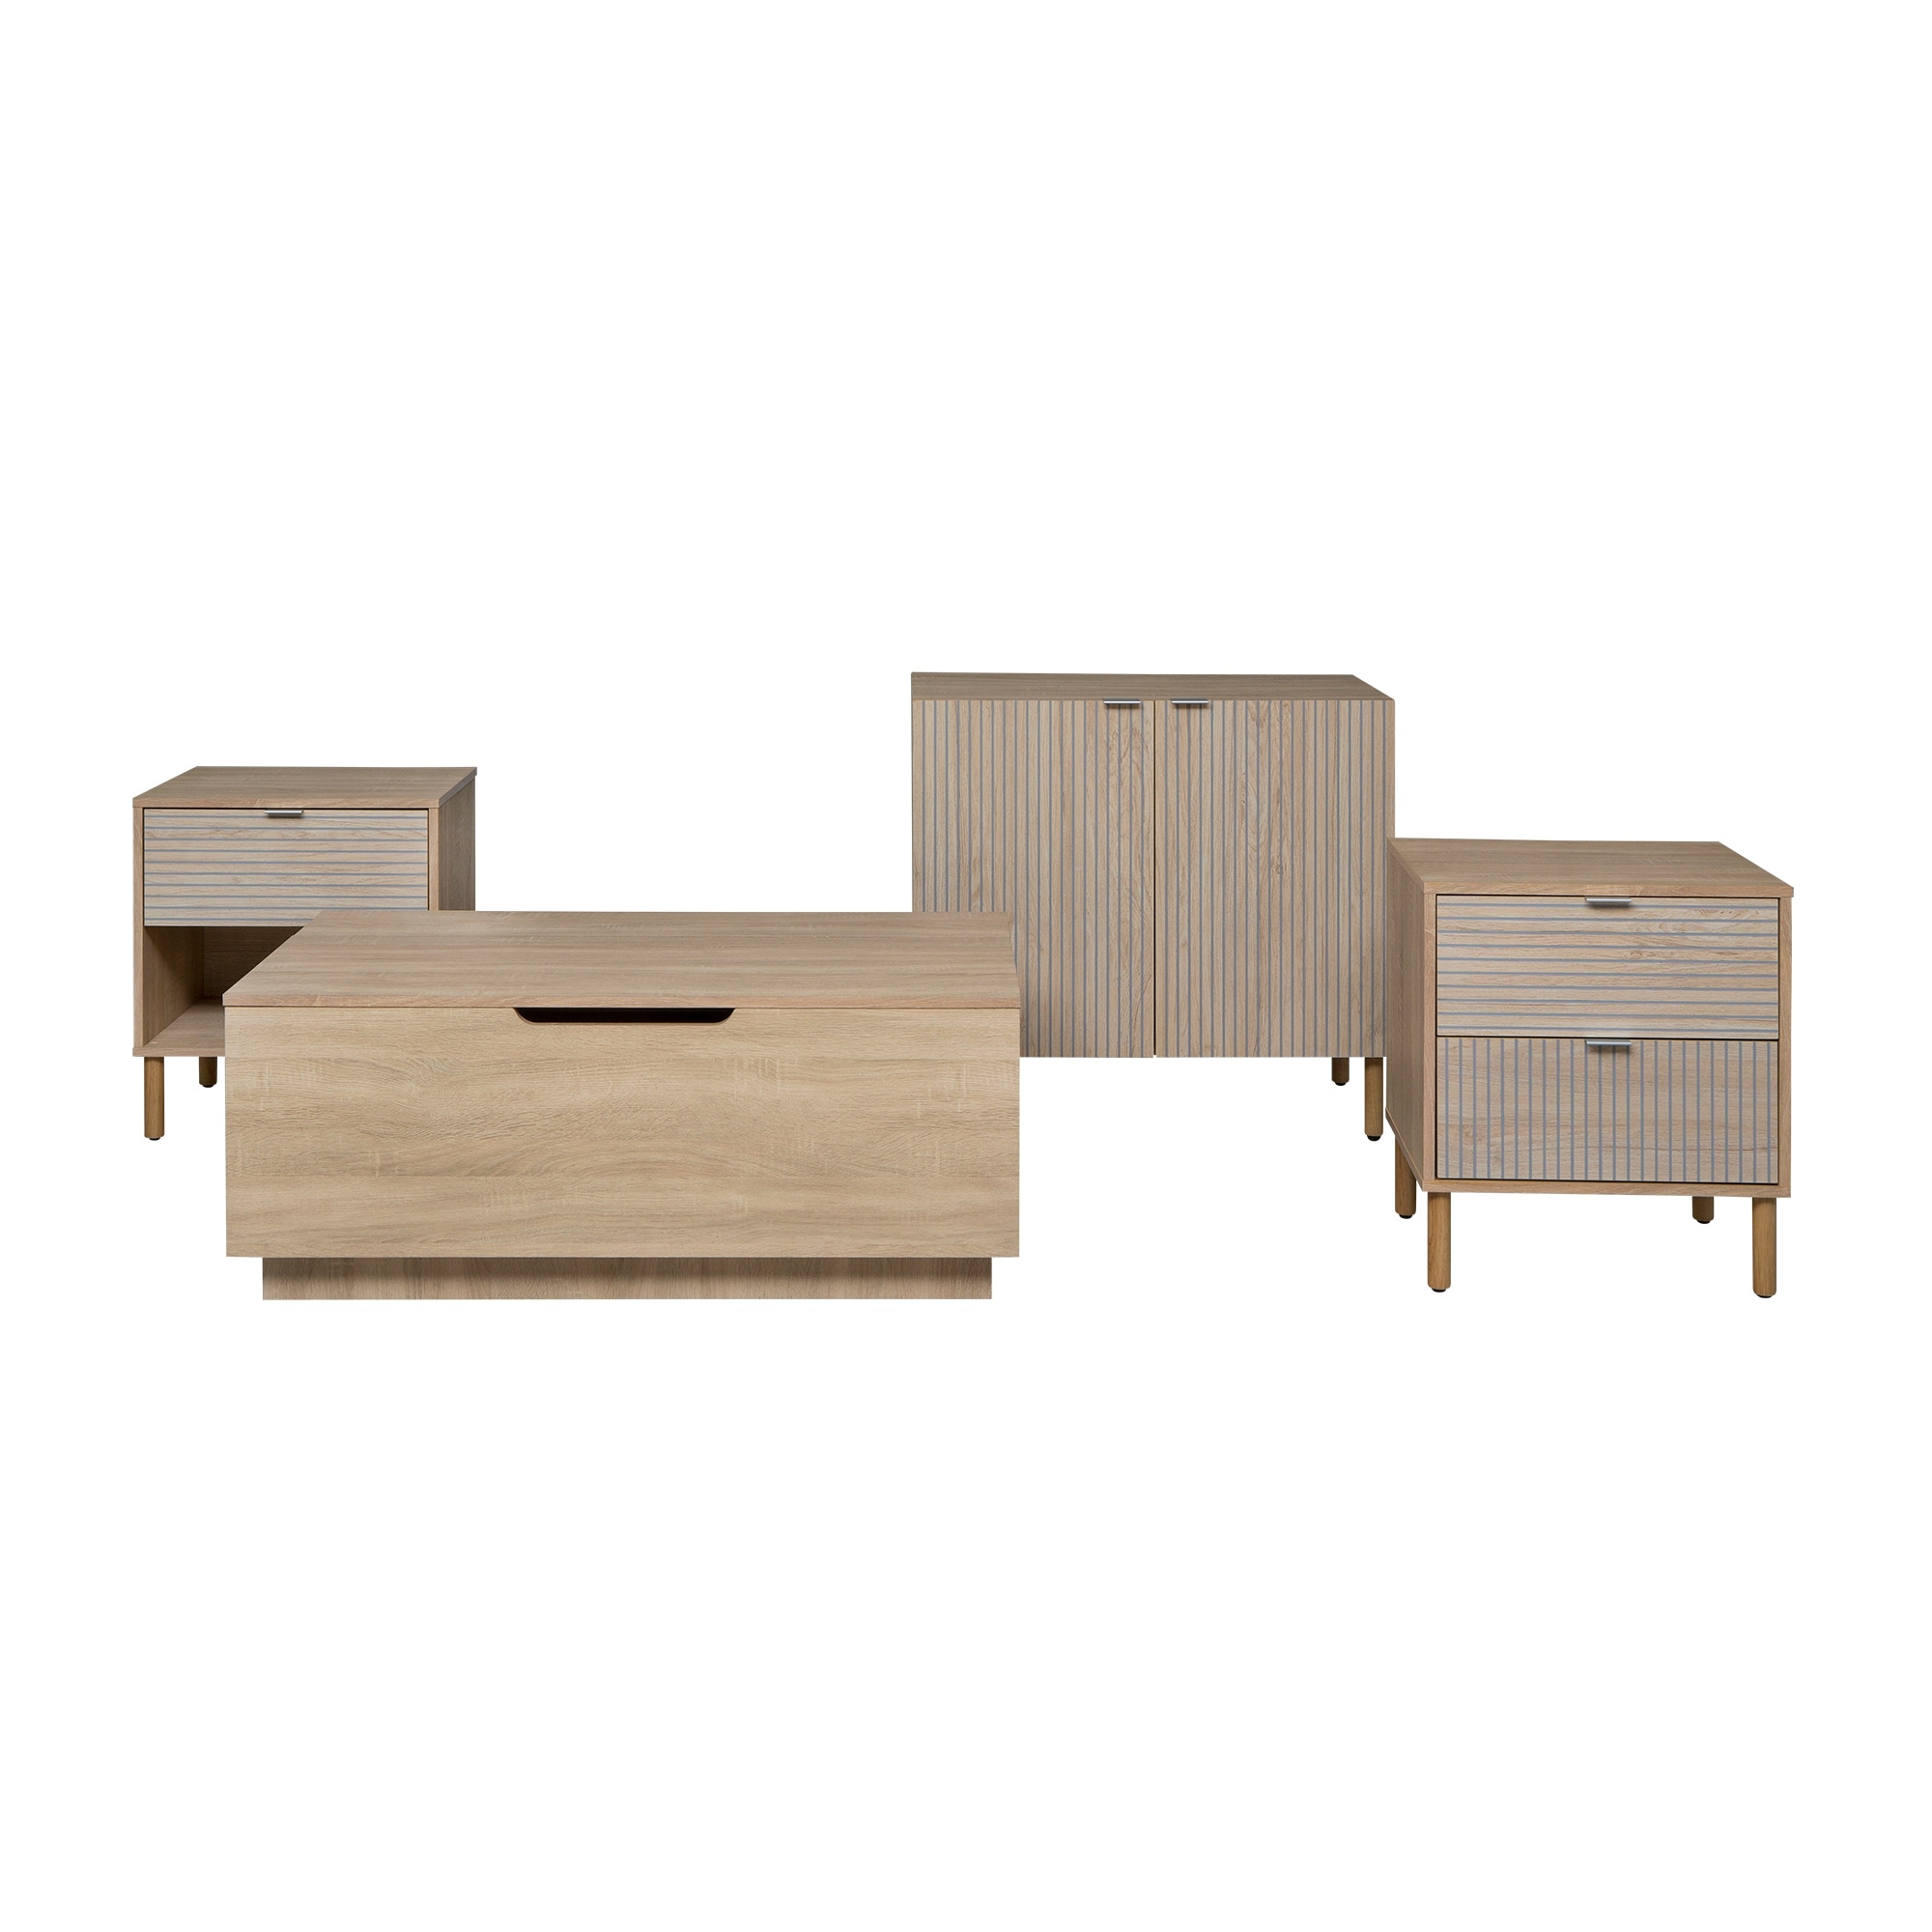 Wood 2 Door 2 Tier Shoe Cabinet in Brown with Adjustable Shelf